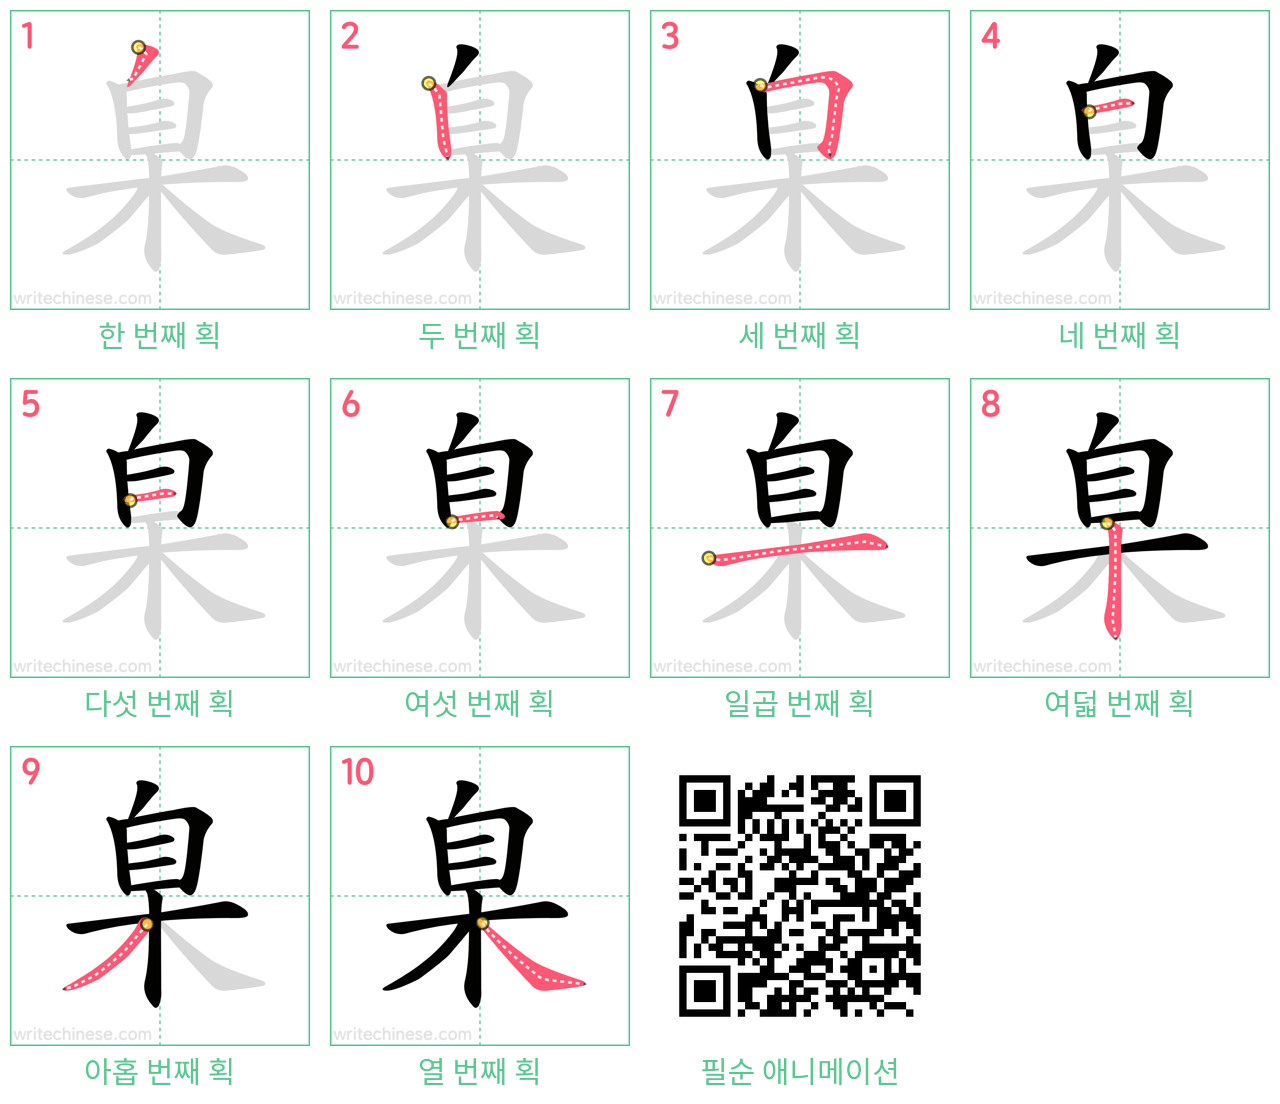 臬 step-by-step stroke order diagrams